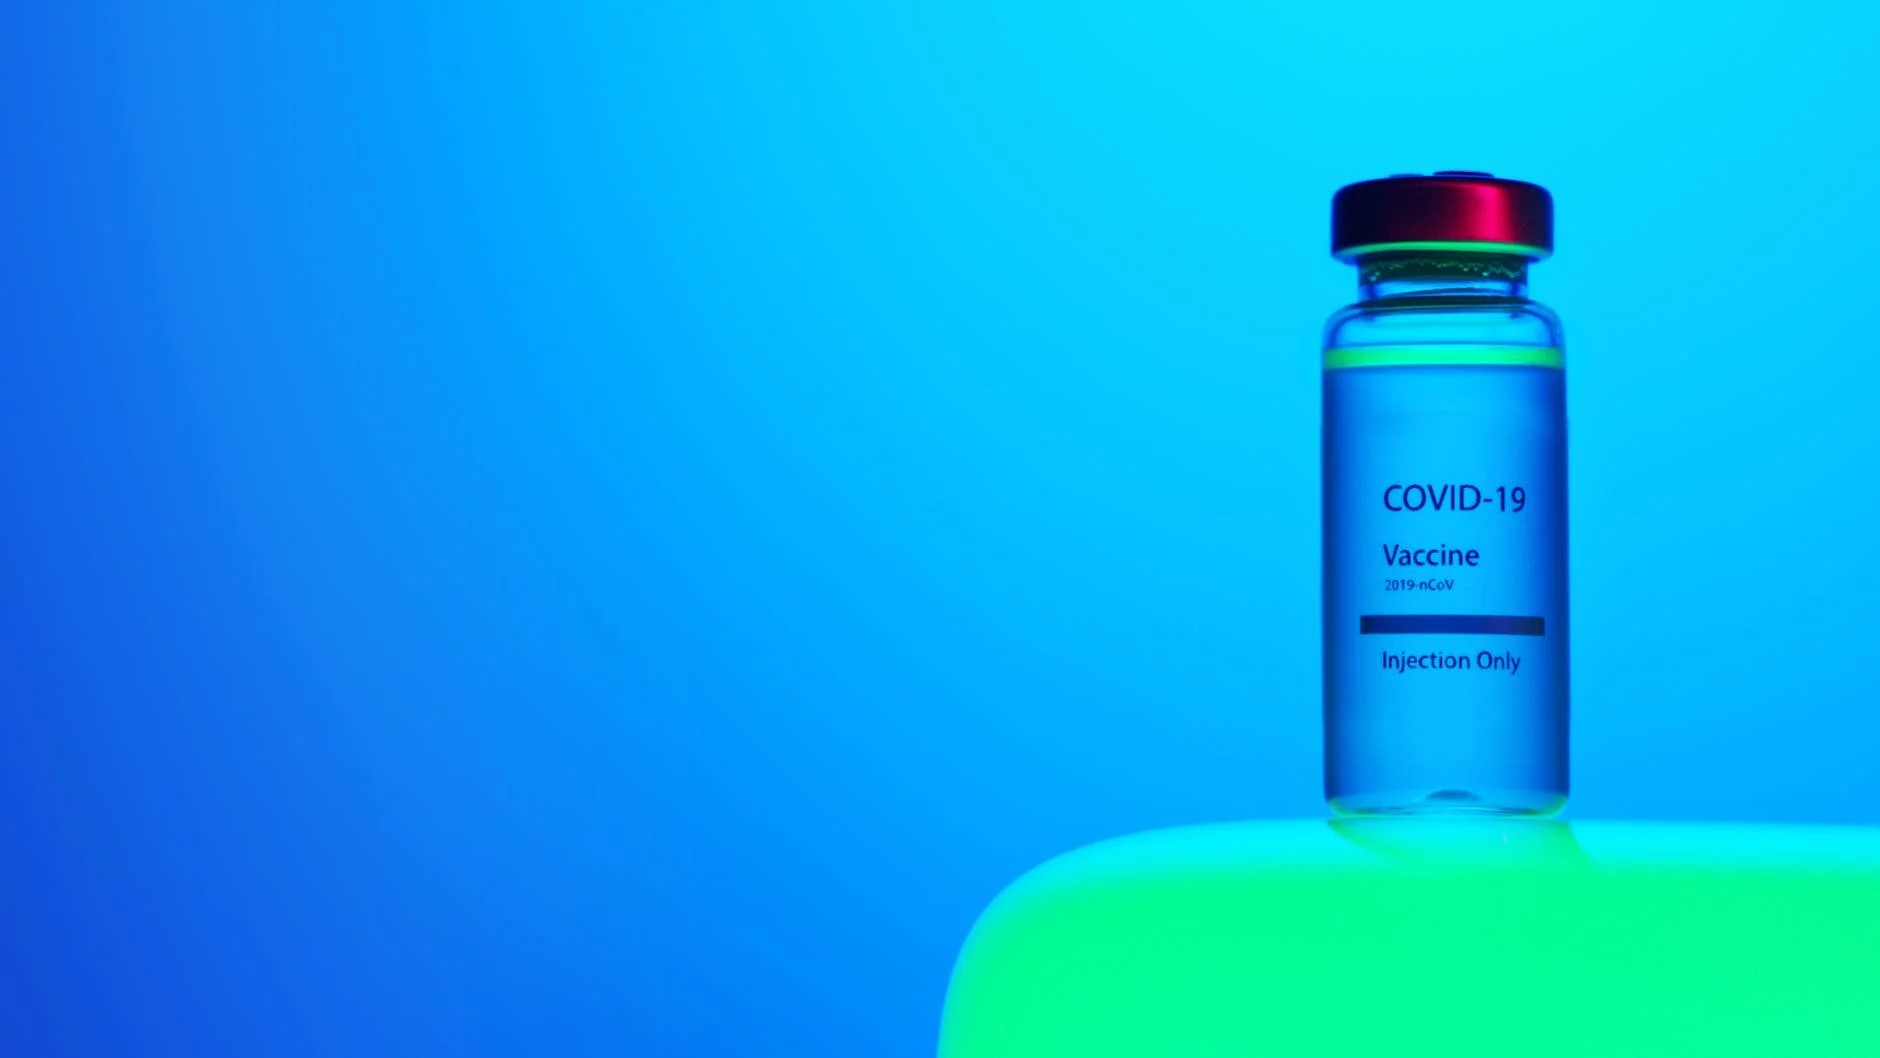 Covid-19 vaccine ampoule